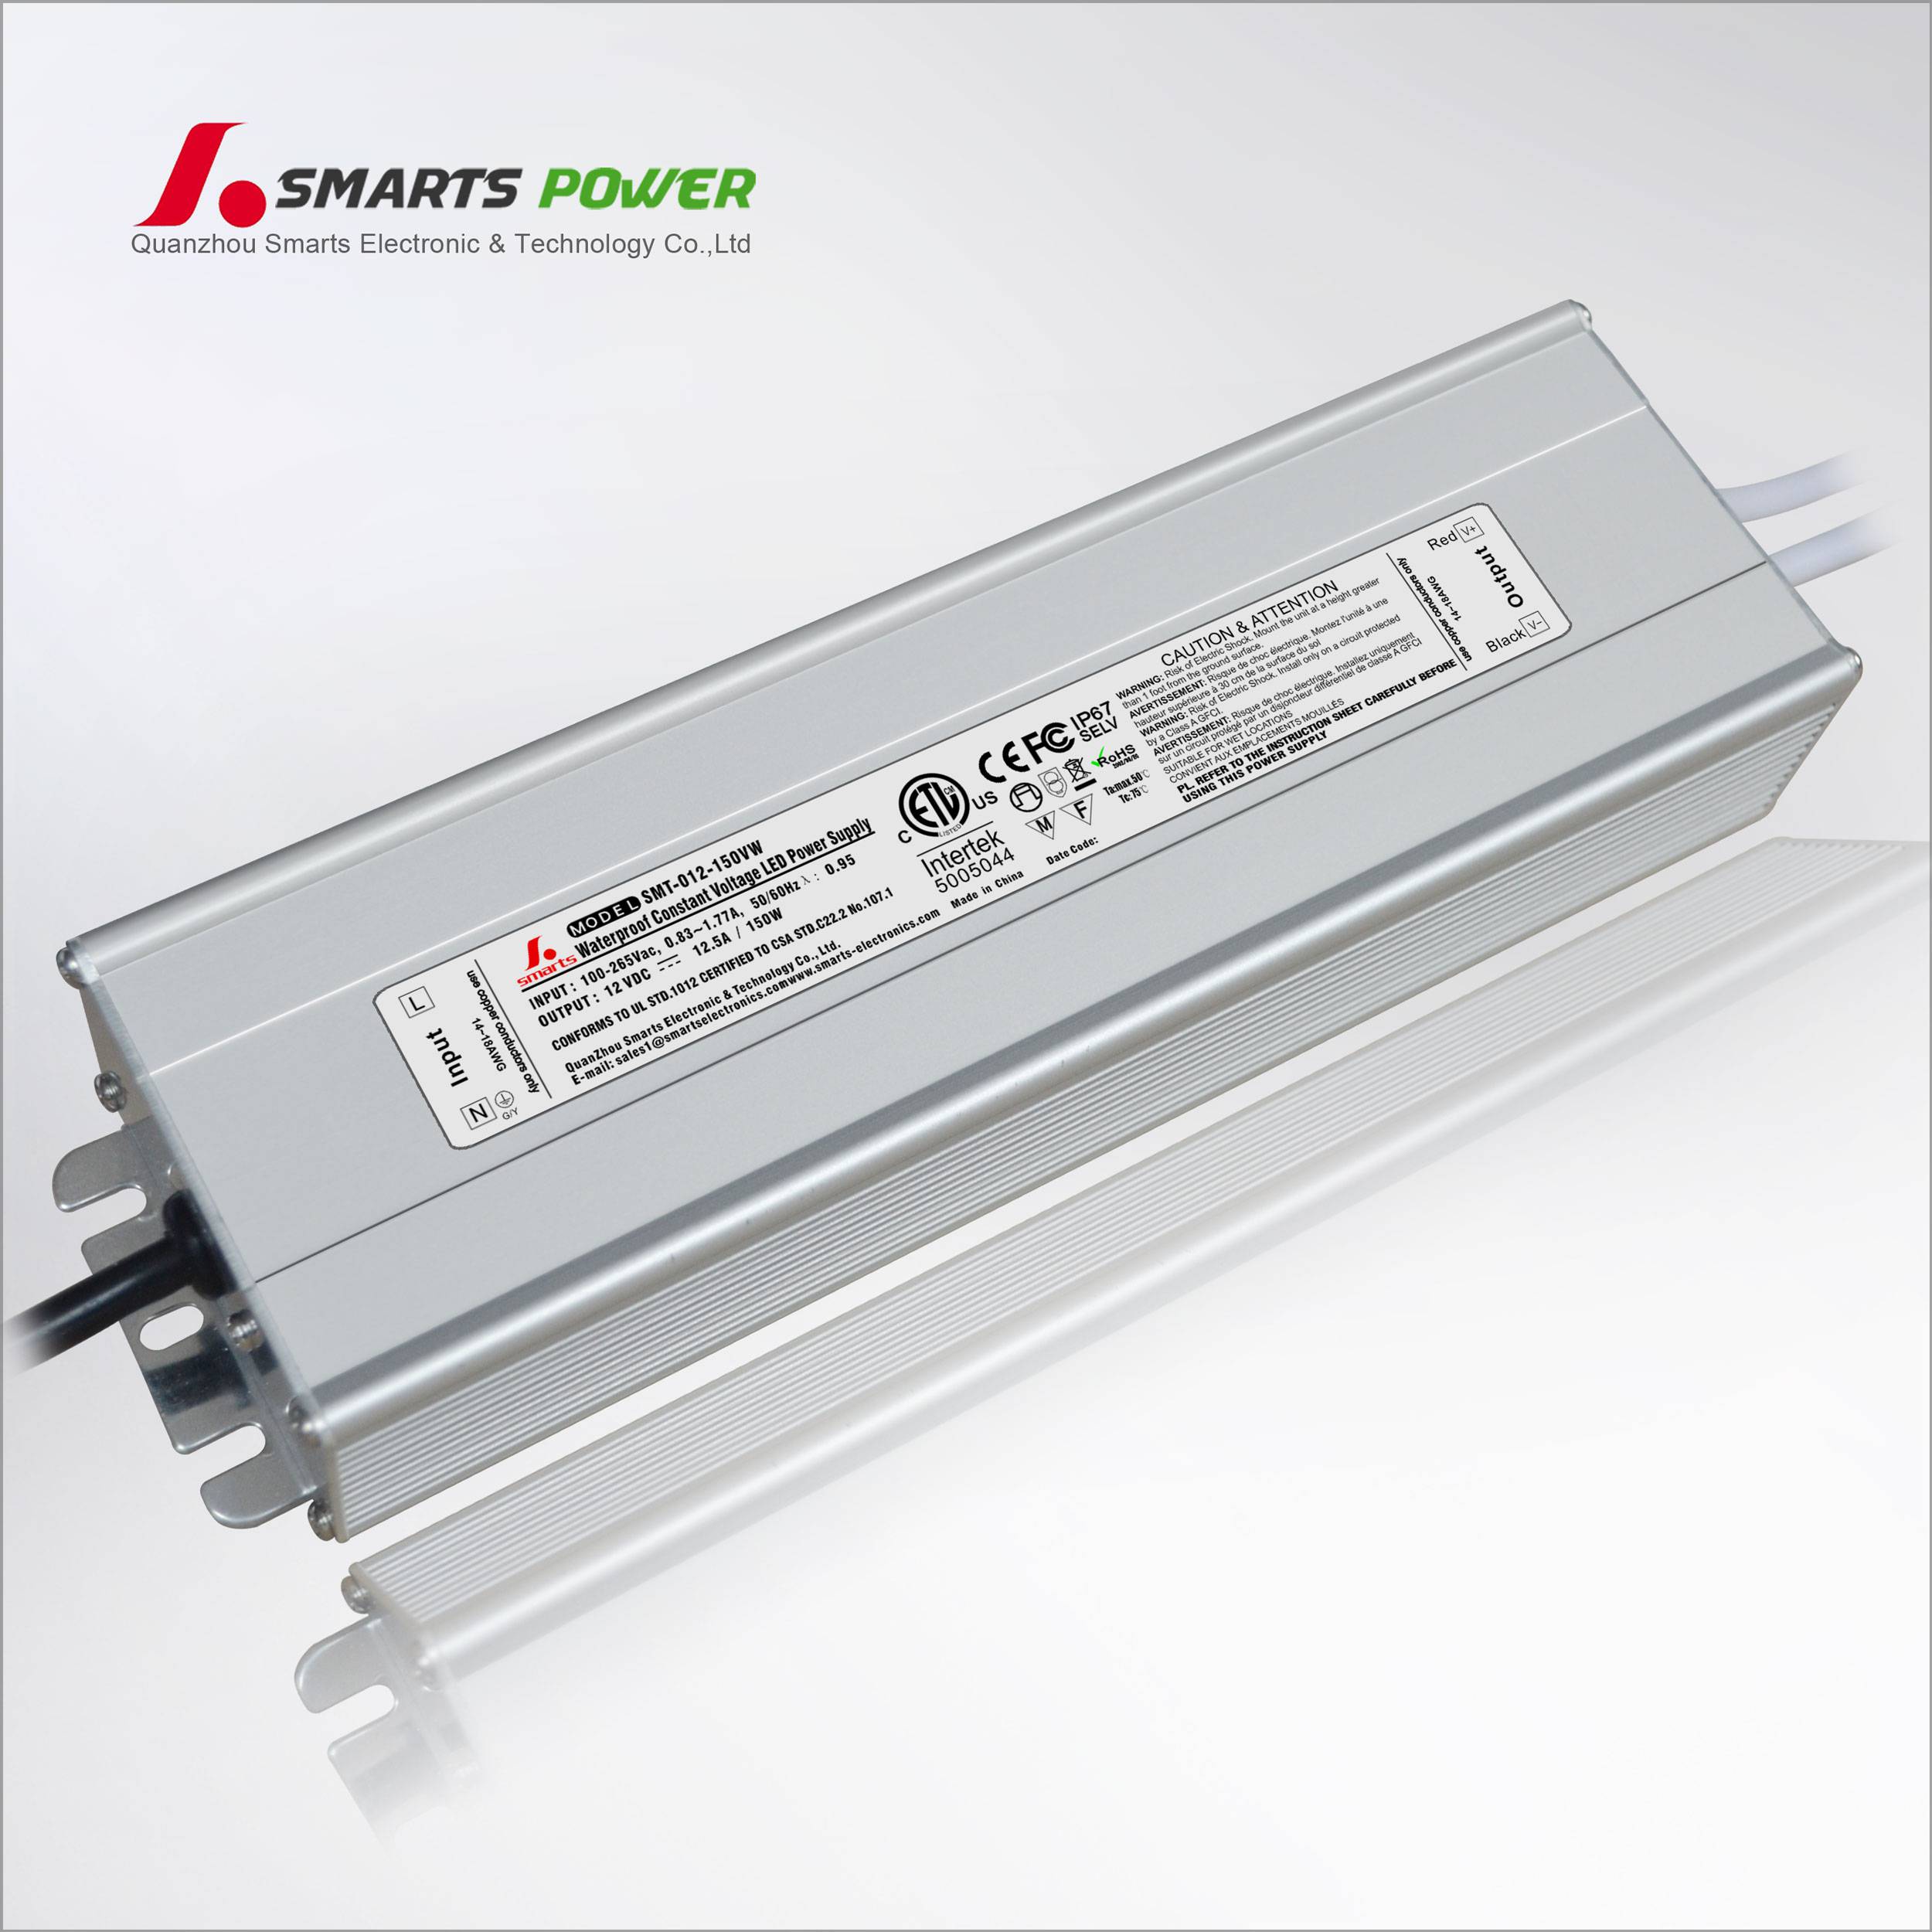 Constant-voltage LED Driver